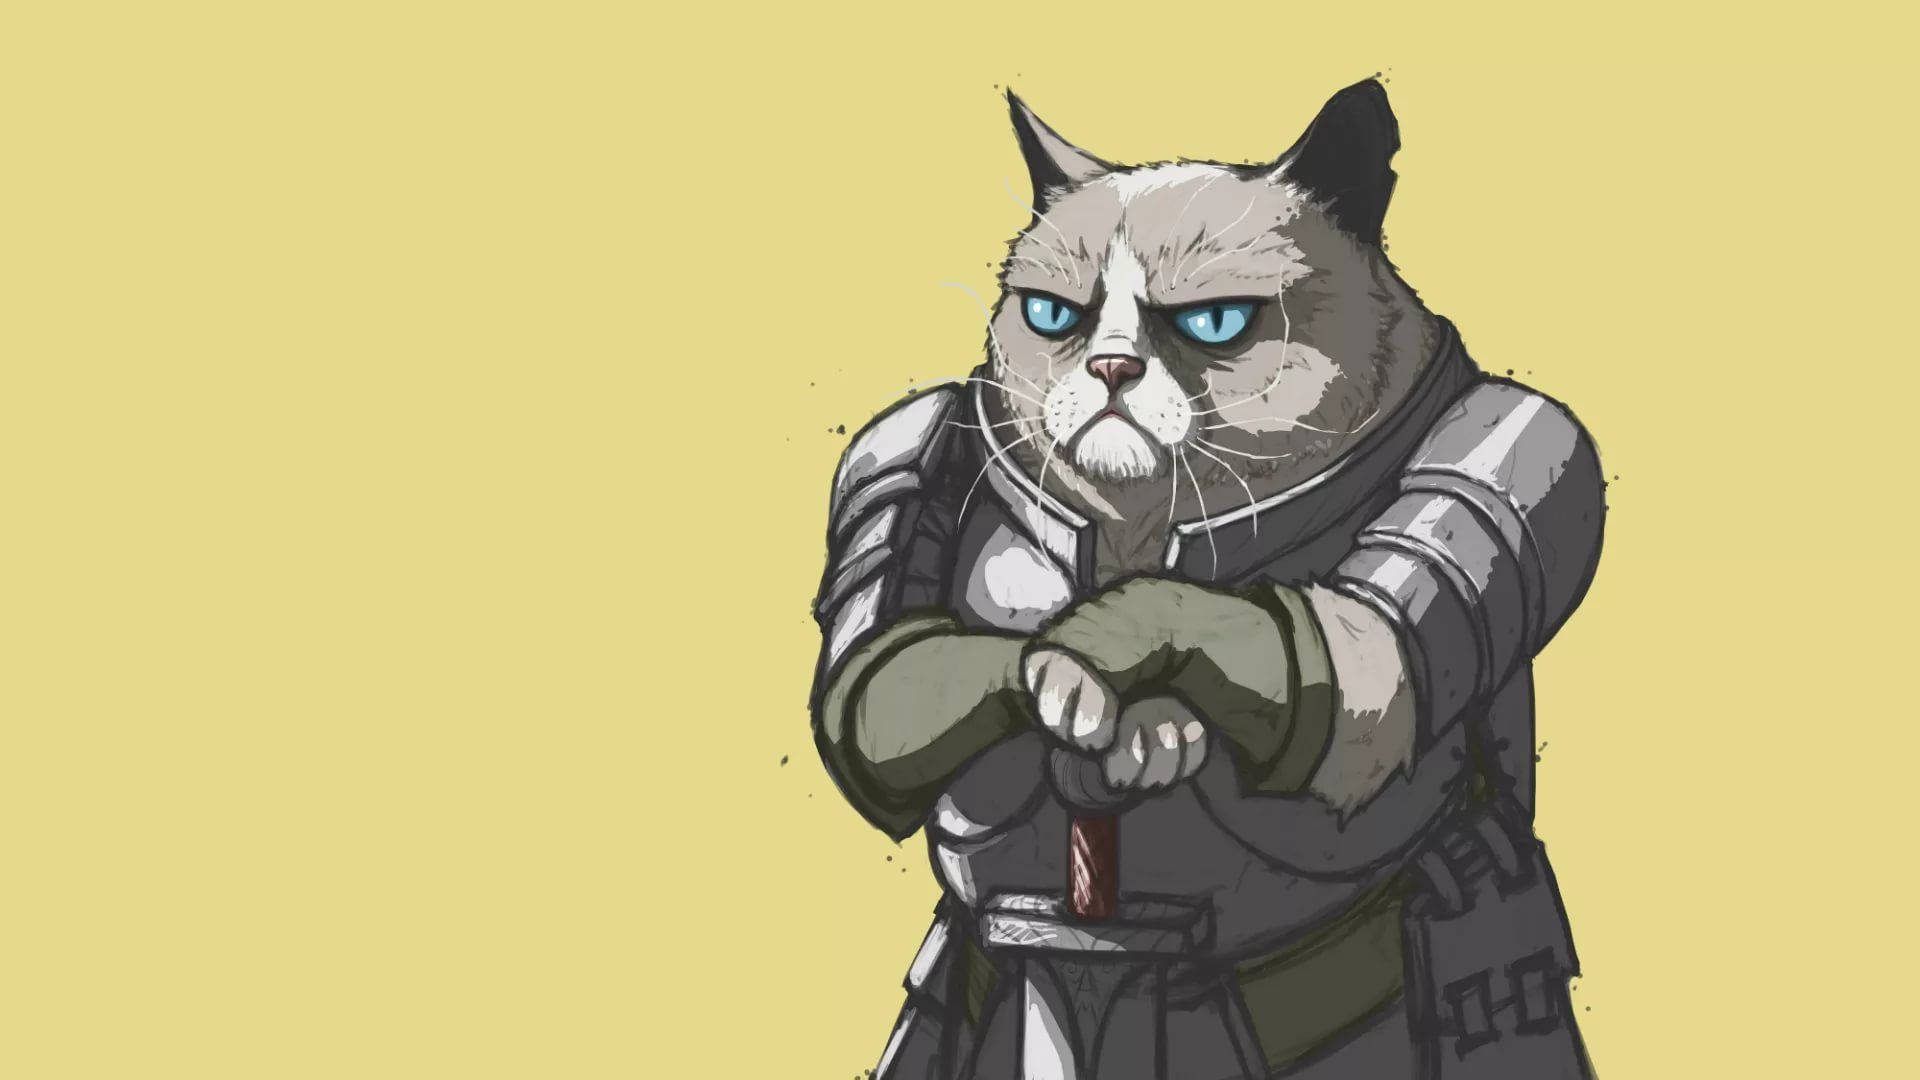 Grumpy Cat Cartoon In Armor Meme Wallpaper